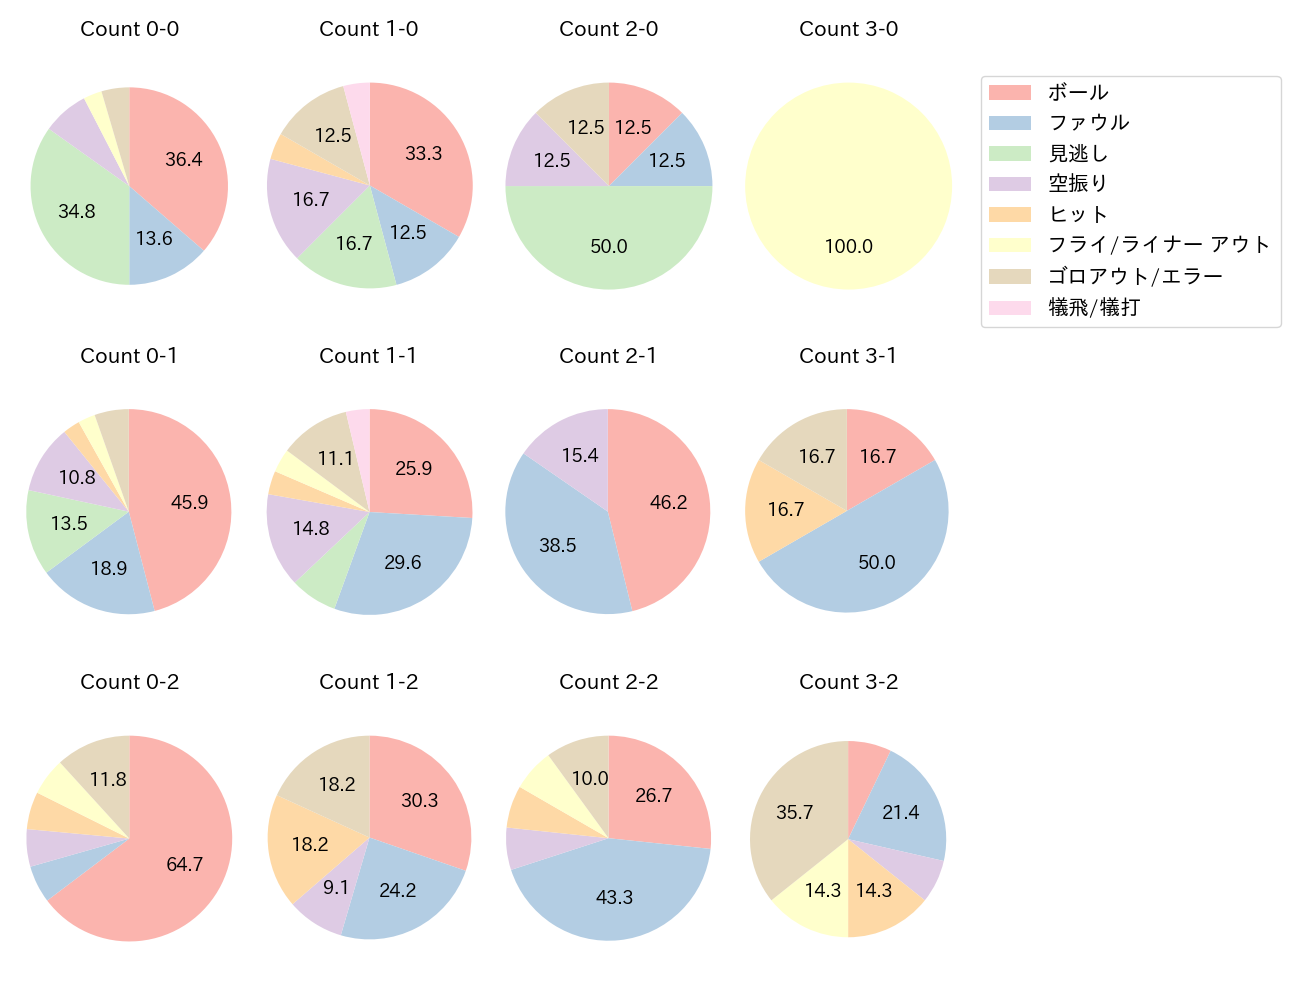 吉川 尚輝の球数分布(2022年5月)